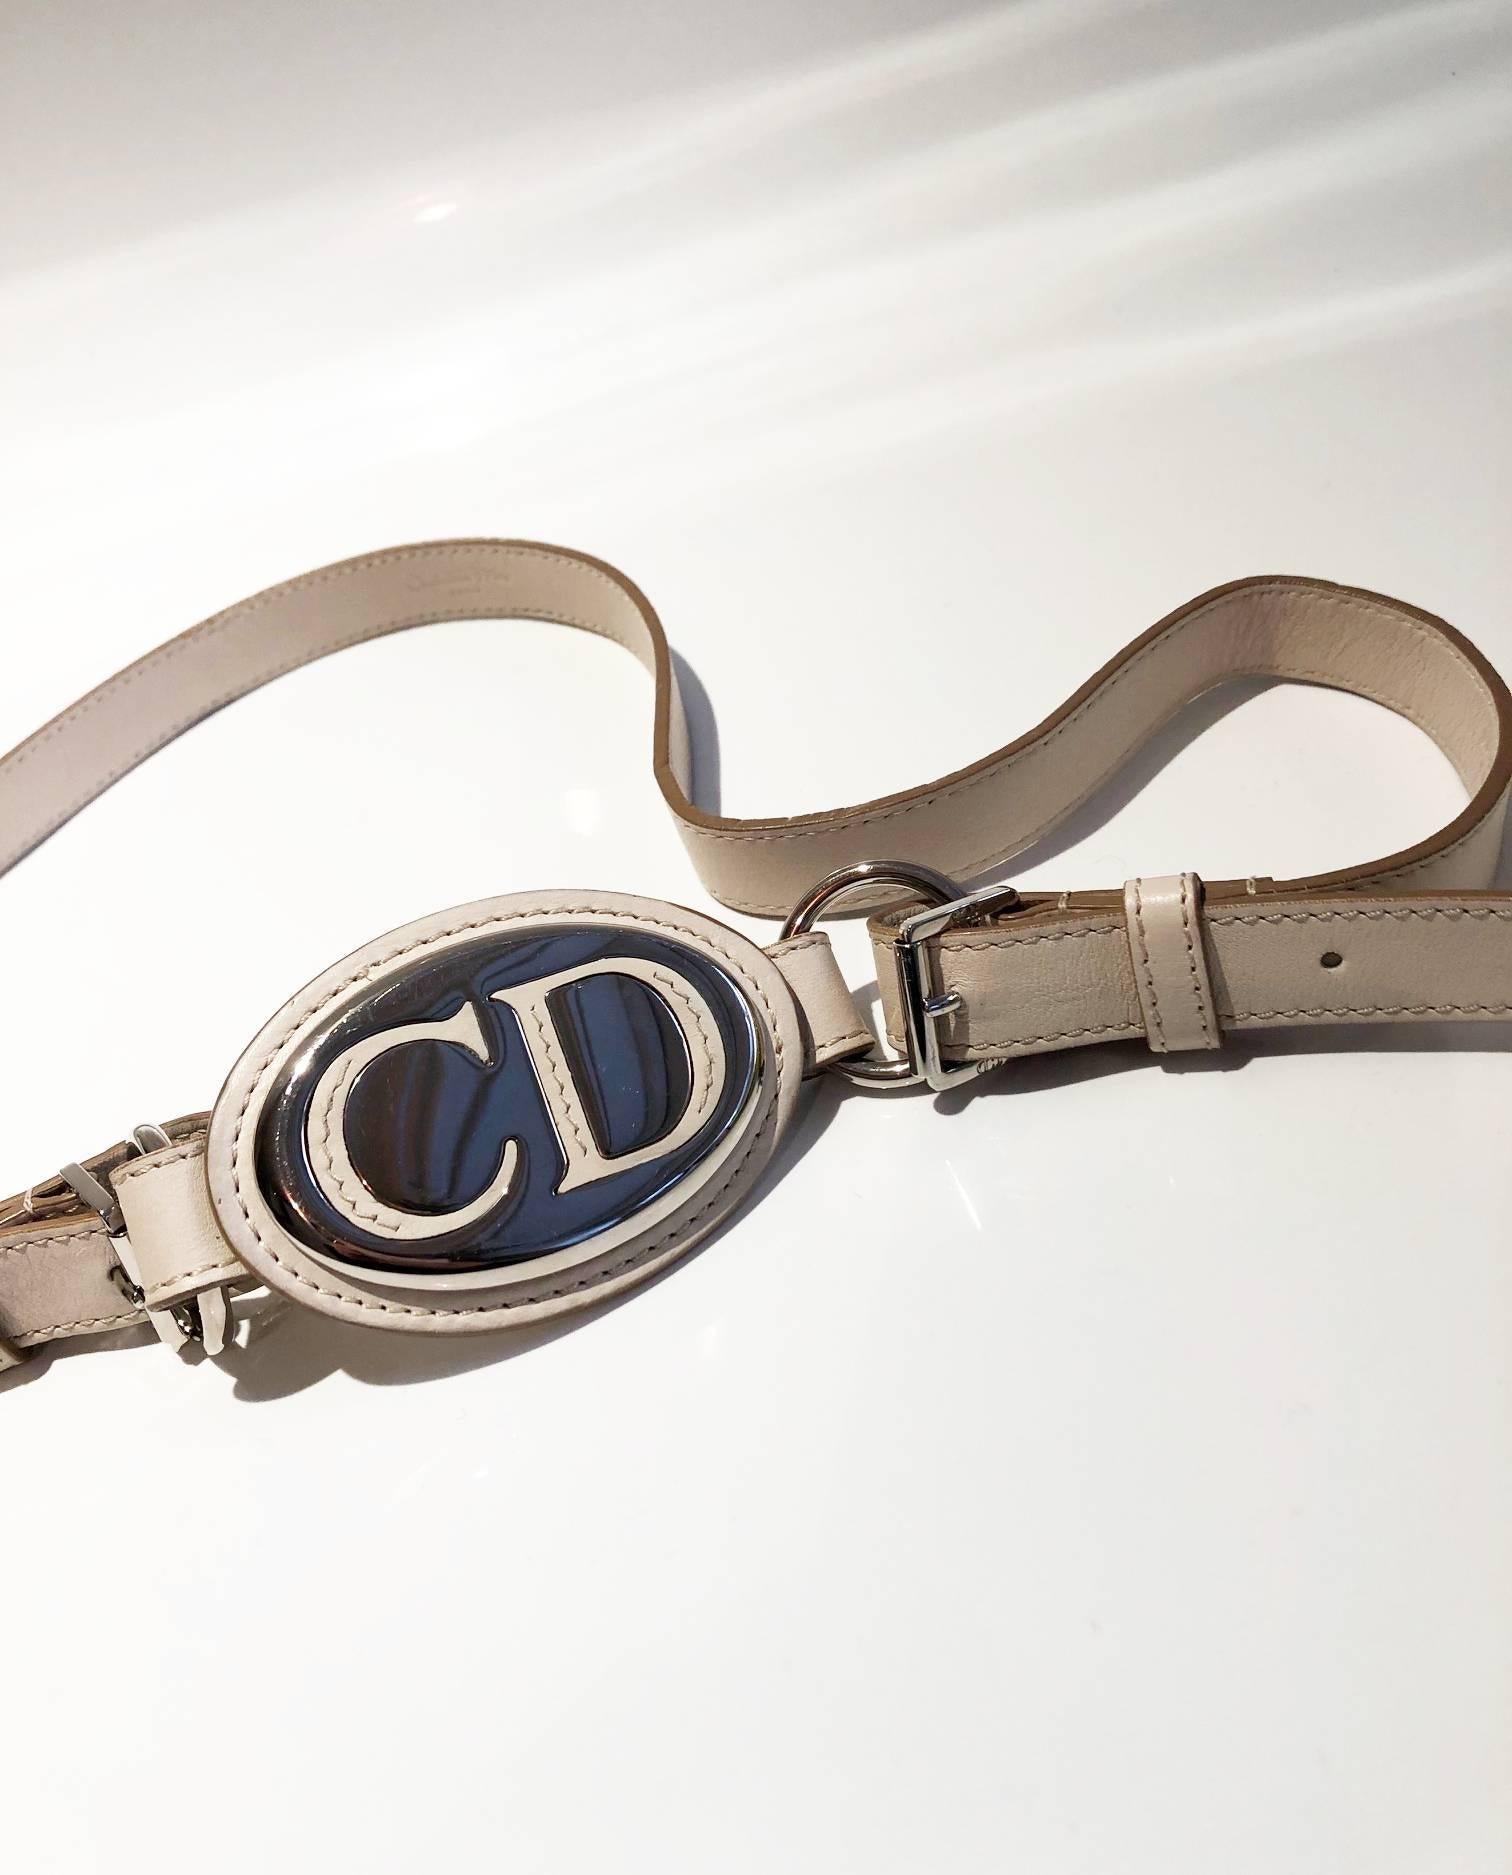 Dies ist ein schöner Gürtel von John Galliano für Christian Dior, in weißem Leder, Chrom CD-Logo Schnalle, Seite Kupplung verstellbaren Verschluss. hübsch auf beiden Denim-Outfit und mit einem Rock, Made in France 

Zustand: 2000er Jahre. in sehr